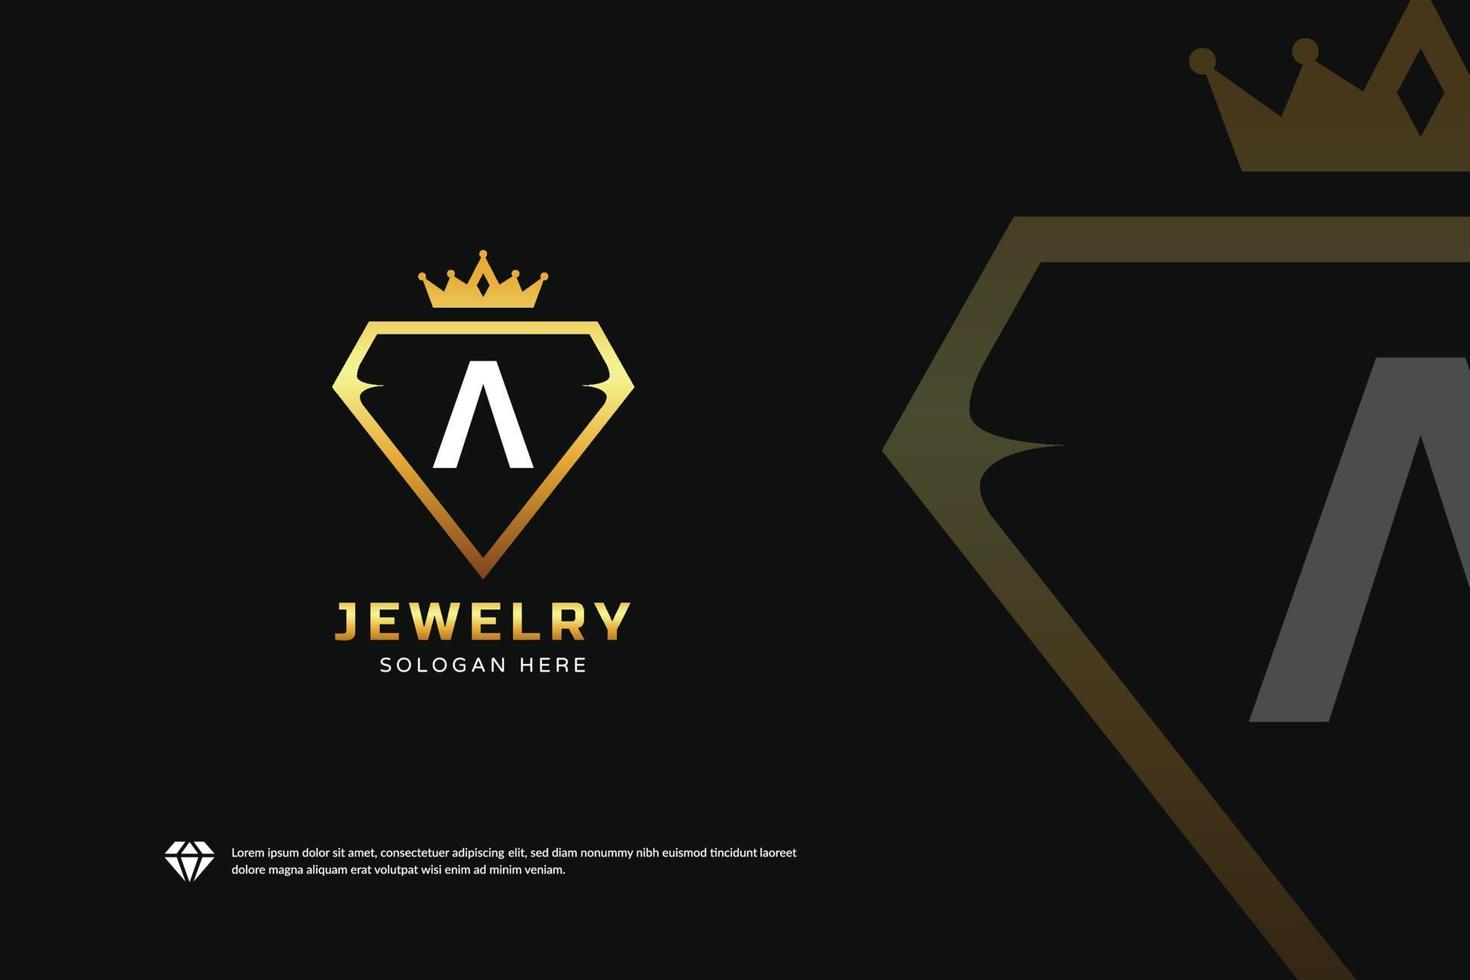 conception créative de boutique de logo de bijoux. modèle de logo de roi de diamant, emblème d'identité de marque, concept de dessins dorés vecteur